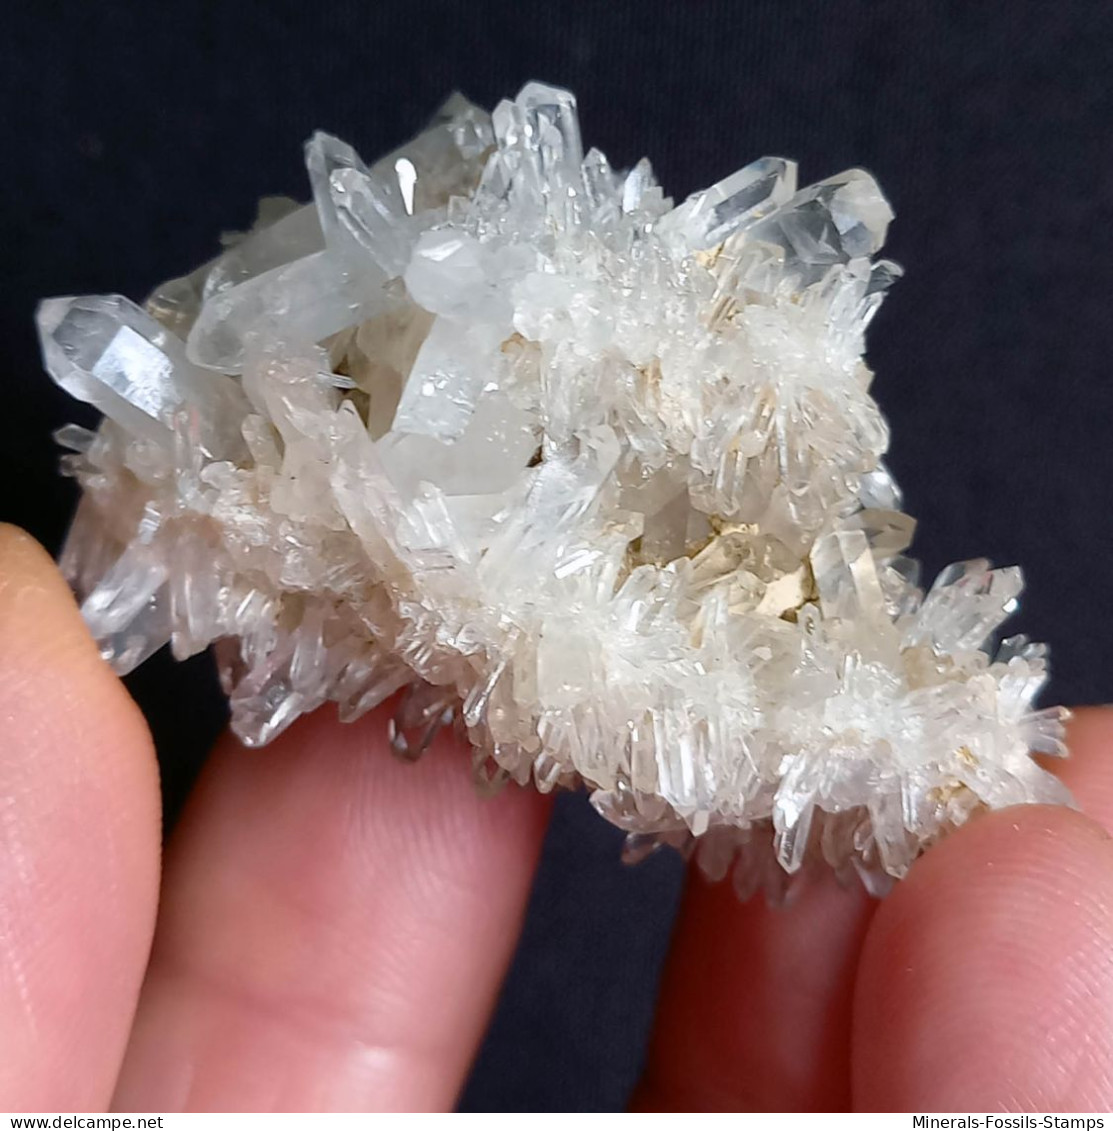 #G75 Splendide cristaux de QUARTZ (Castagnola, Val D'Aveto, Piacenza, Emilia Romagna, Italie)